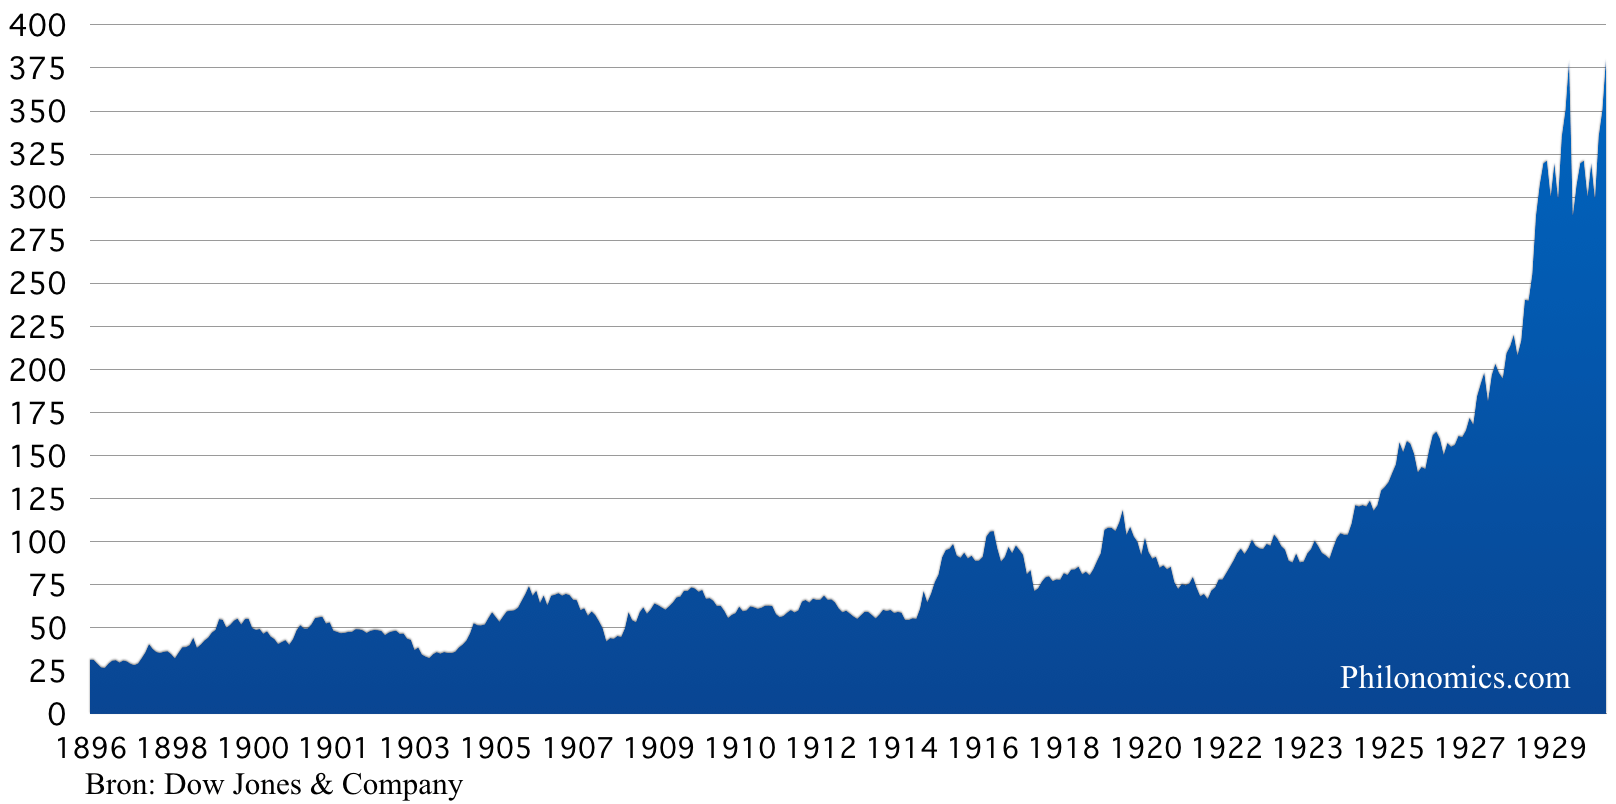 [7] Dow Jones Industrial Average Index 1896-1929